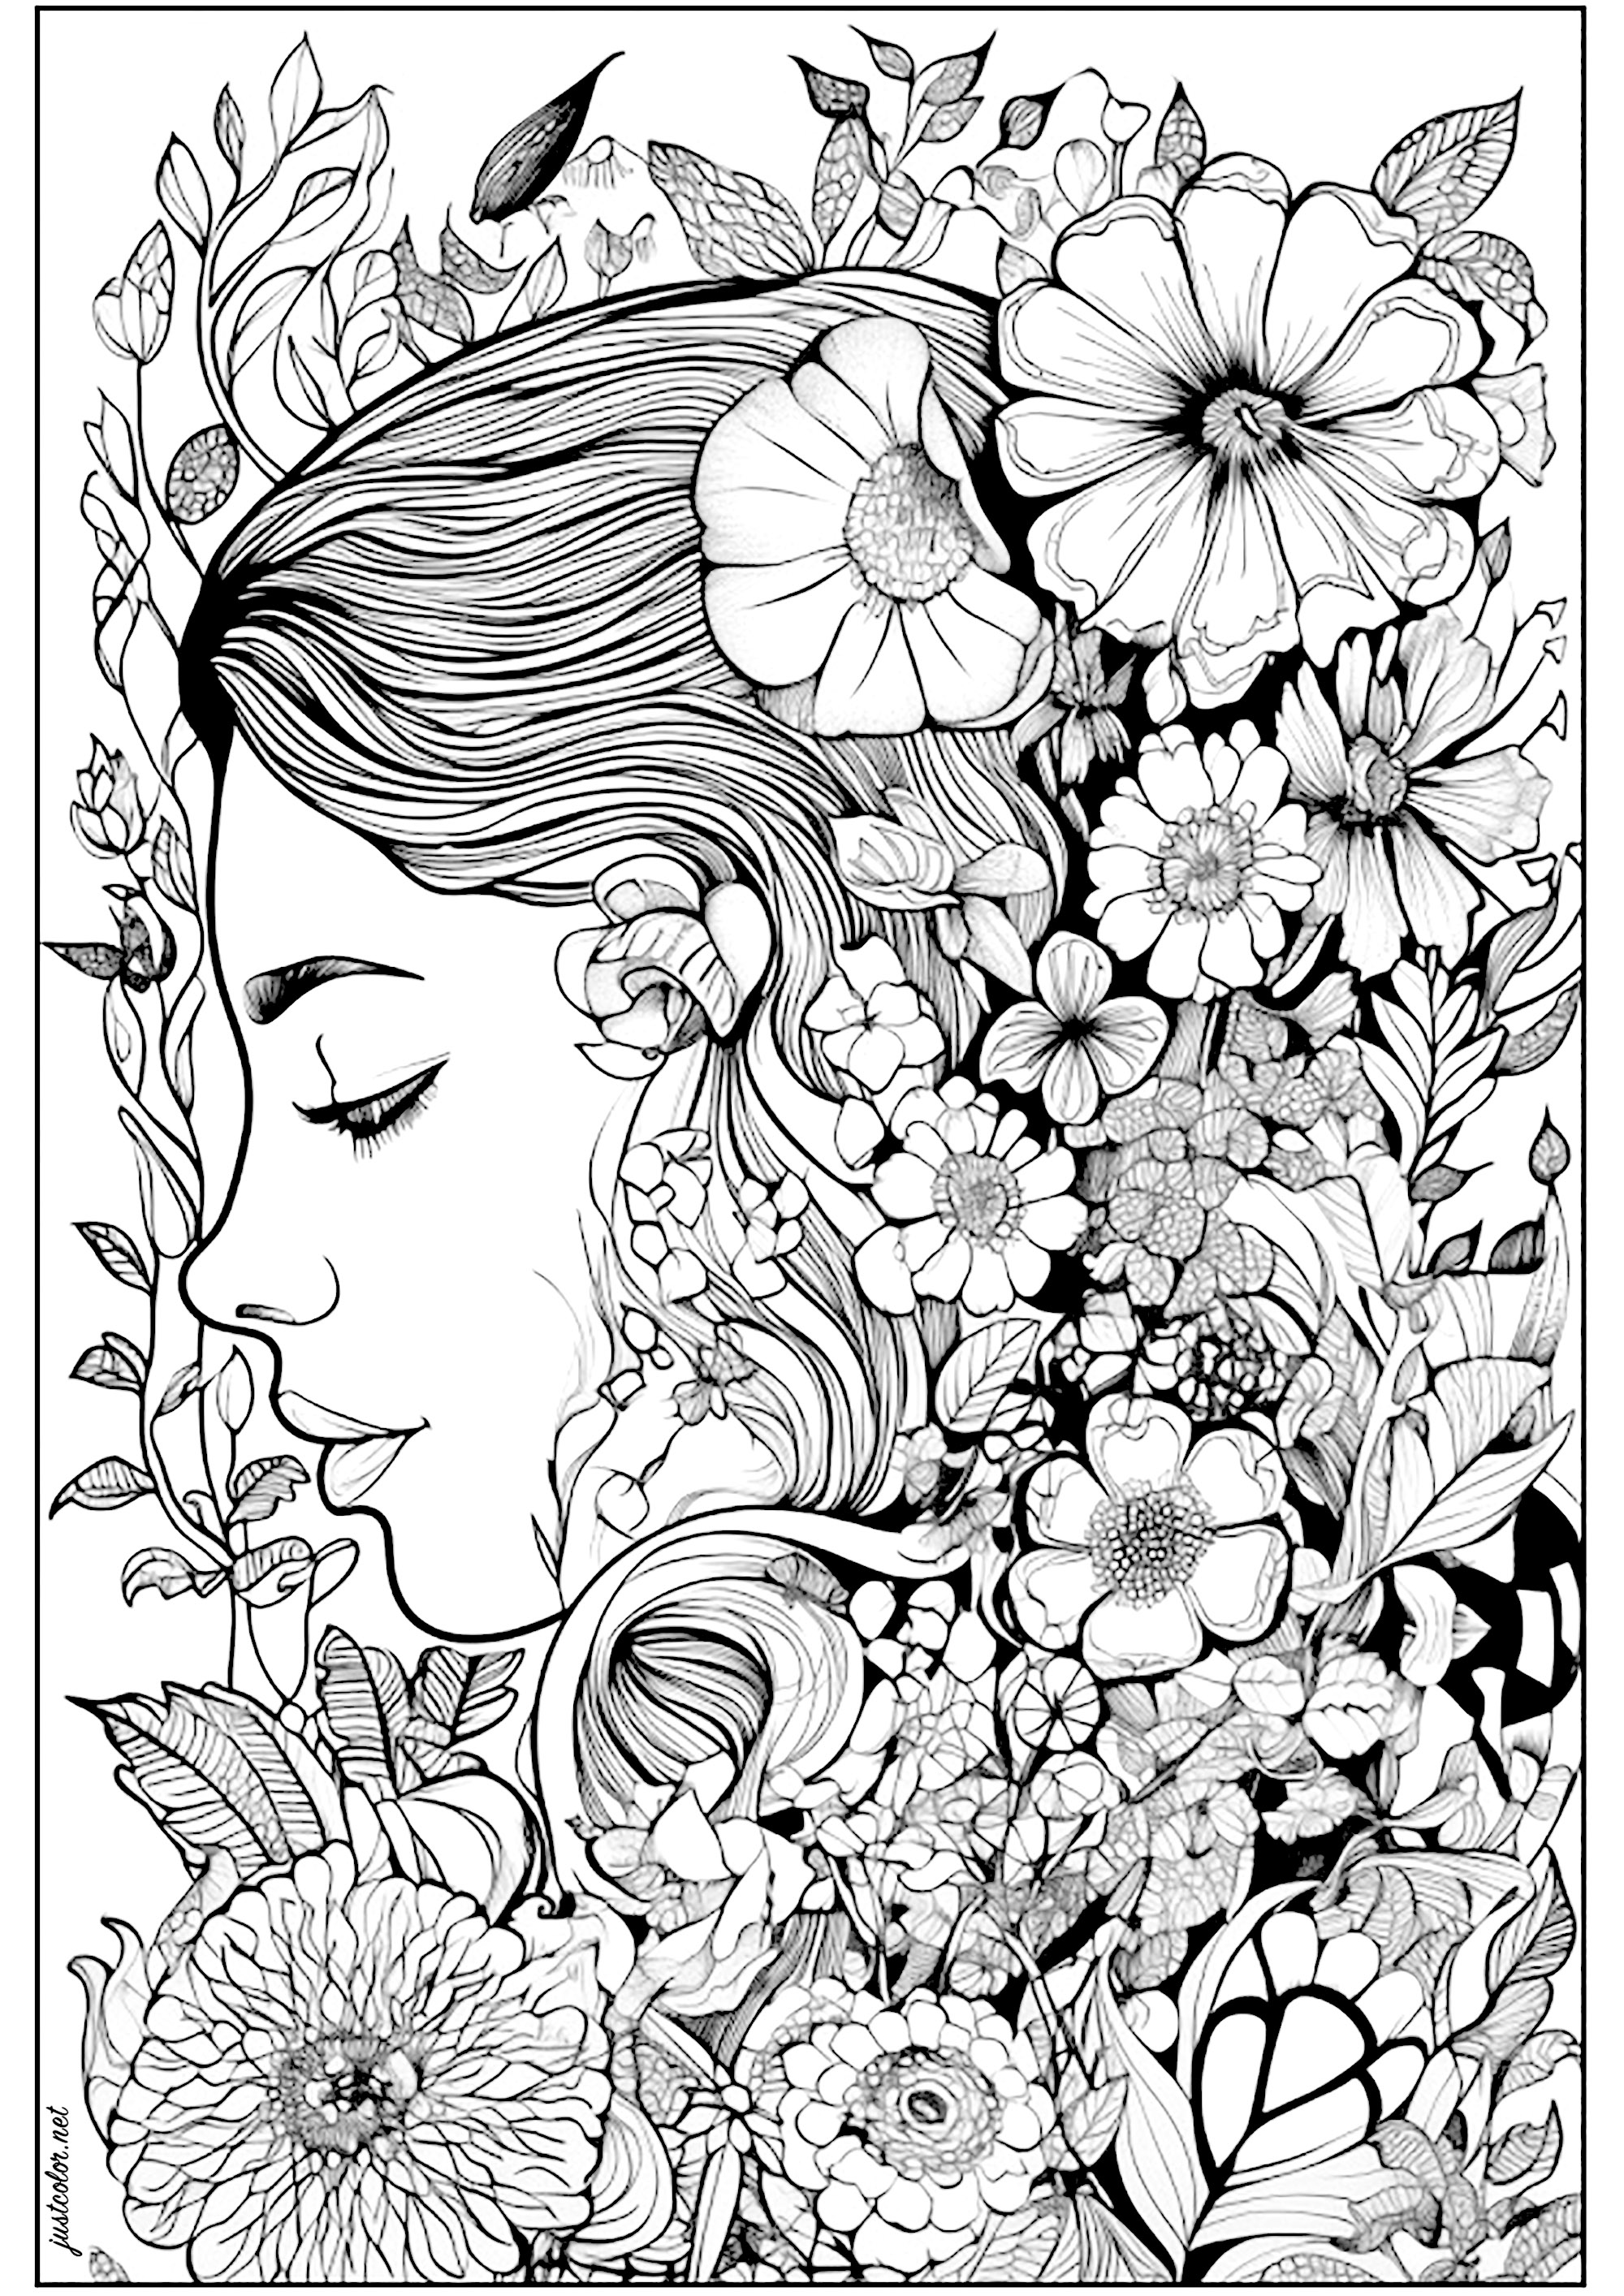 Rostro de mujer pensativa, rodeada de flores. Mujer rodeada de hermosas y variadas flores